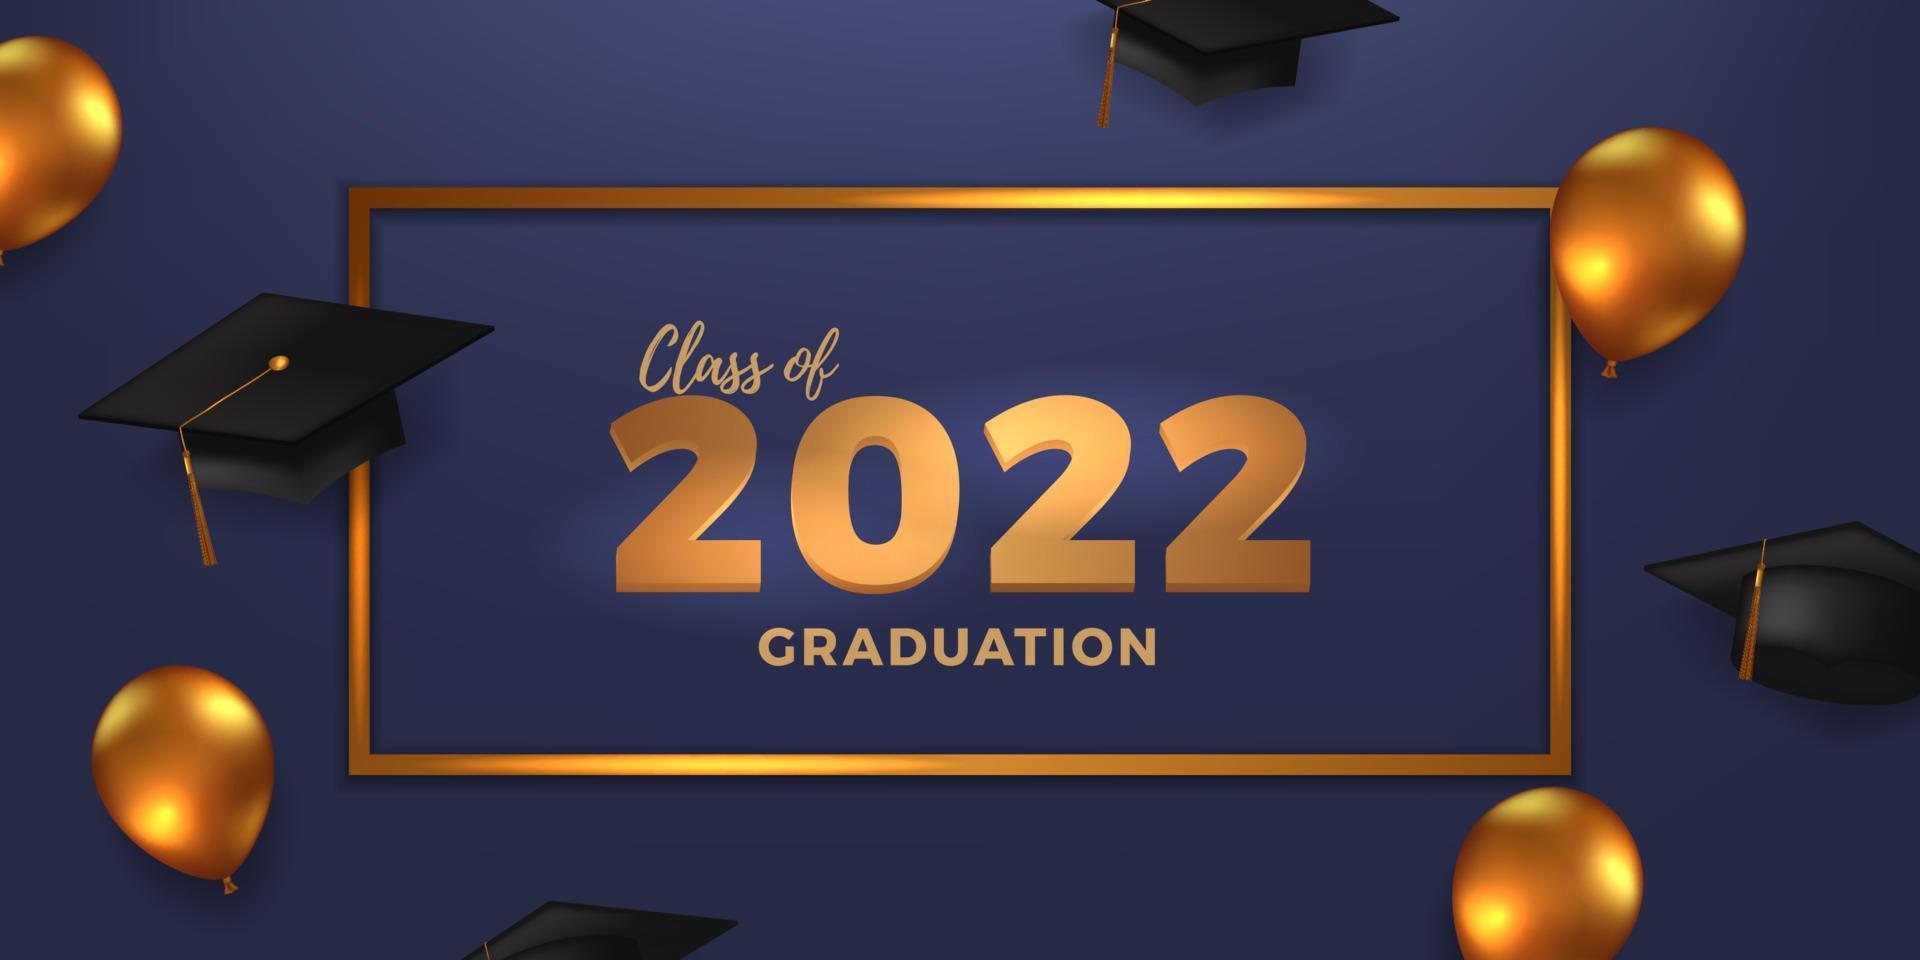 festa de formatura de classe 2022 com chapéu de formatura e decoração de balão dourado com fundo azul vetor